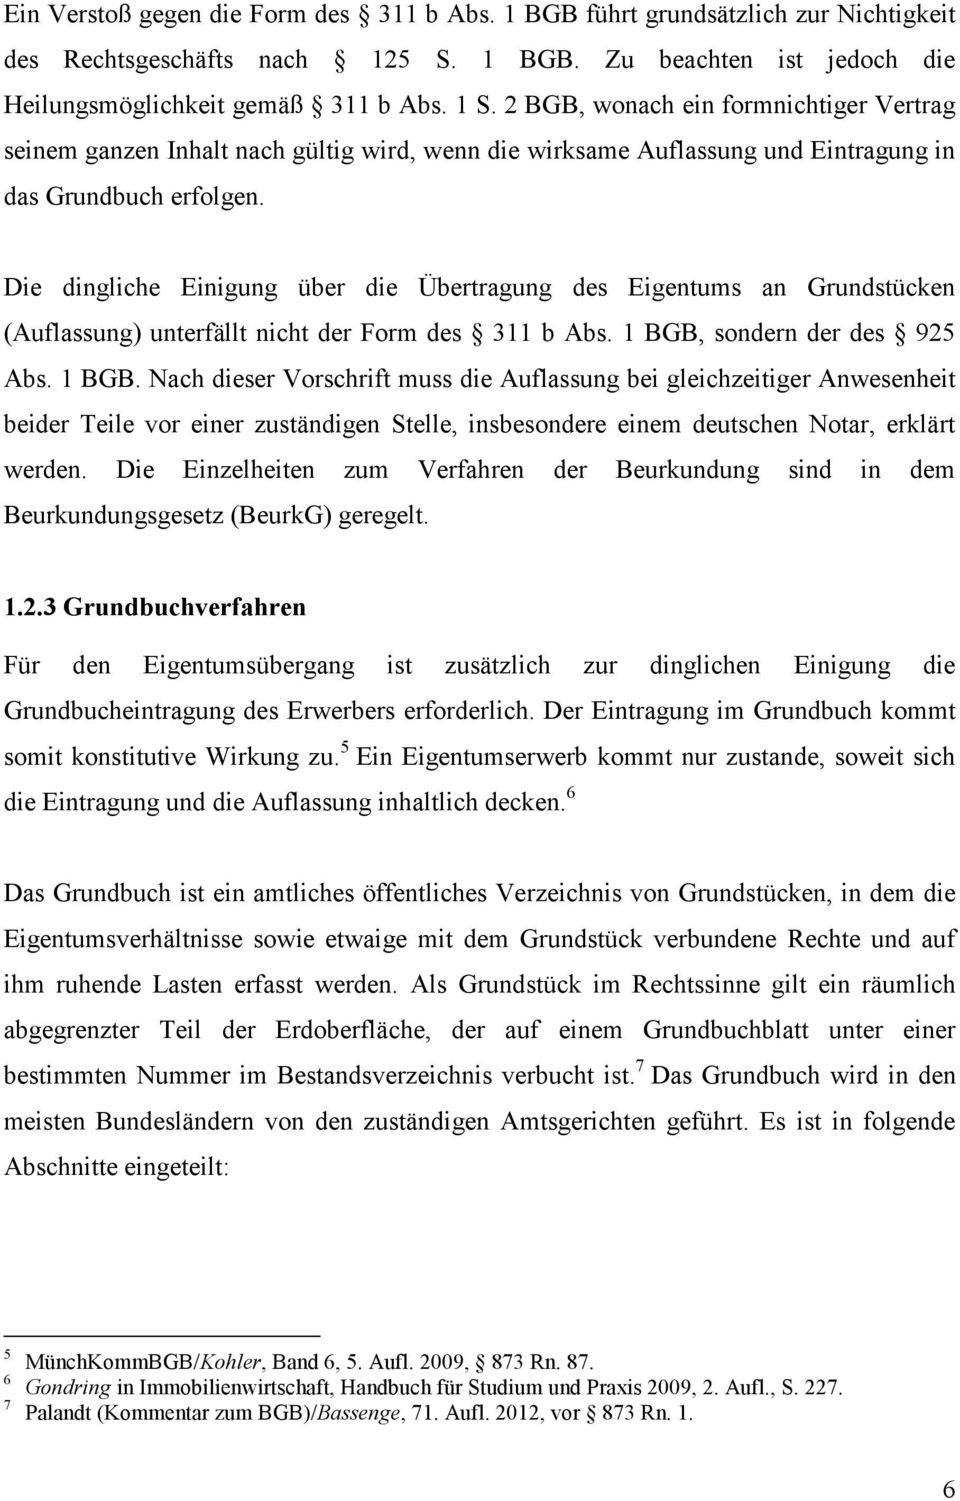 Frühjahrstagung Deutsch Nordische Juristenvereinigung Ev 11 Bis